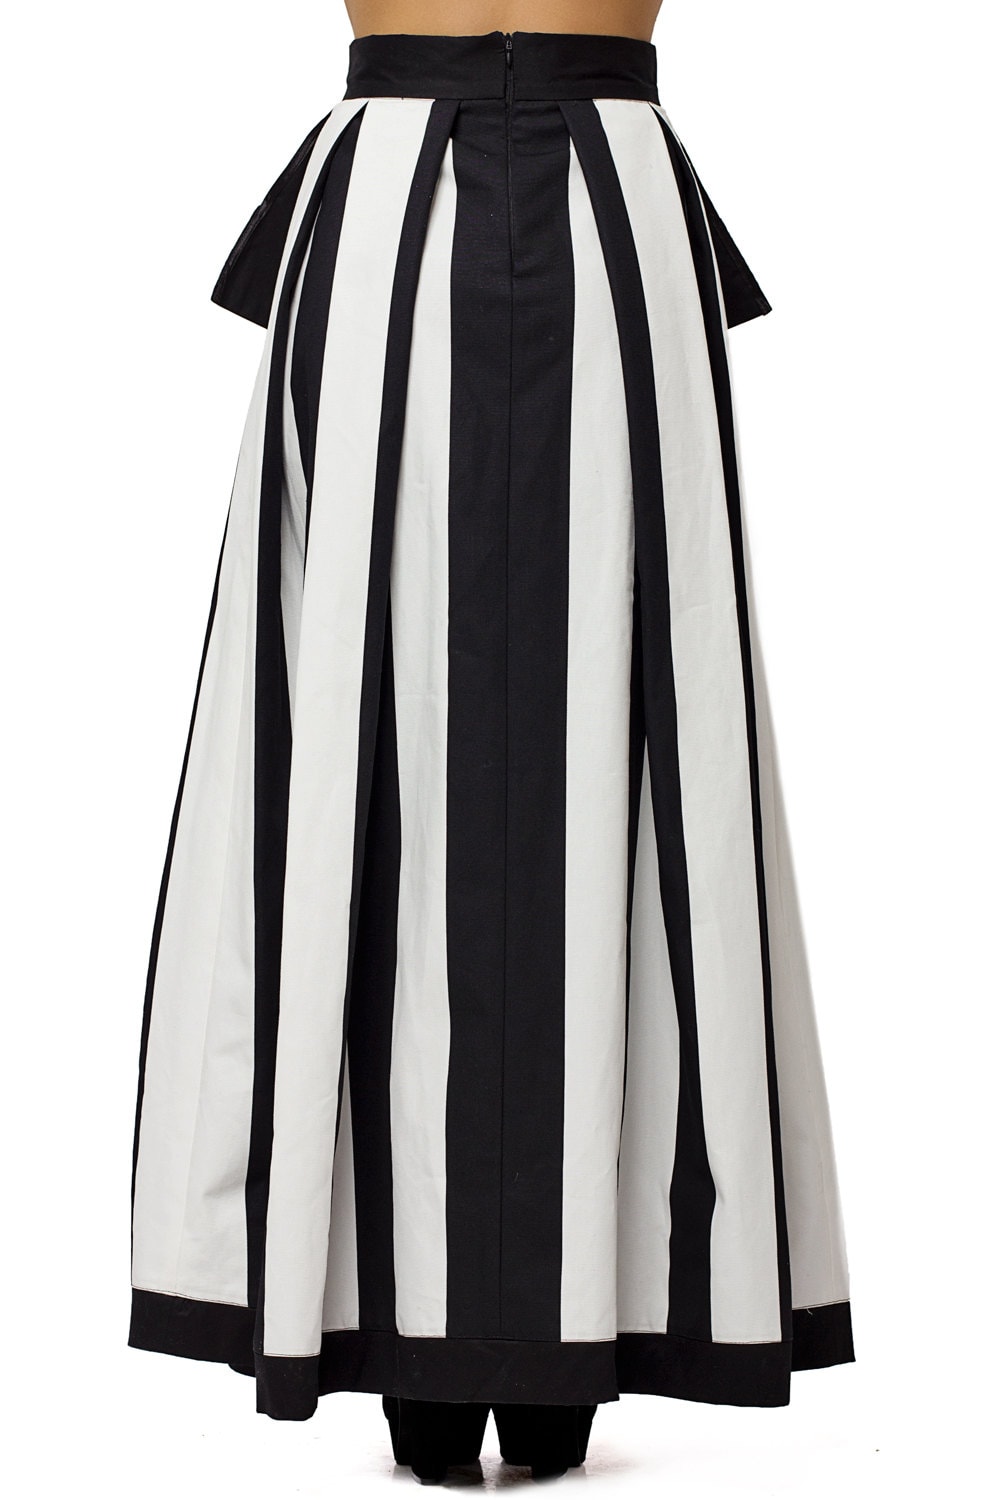 High Waist Black and White Skirt / Long Maxi Skirt / Pocket | Etsy